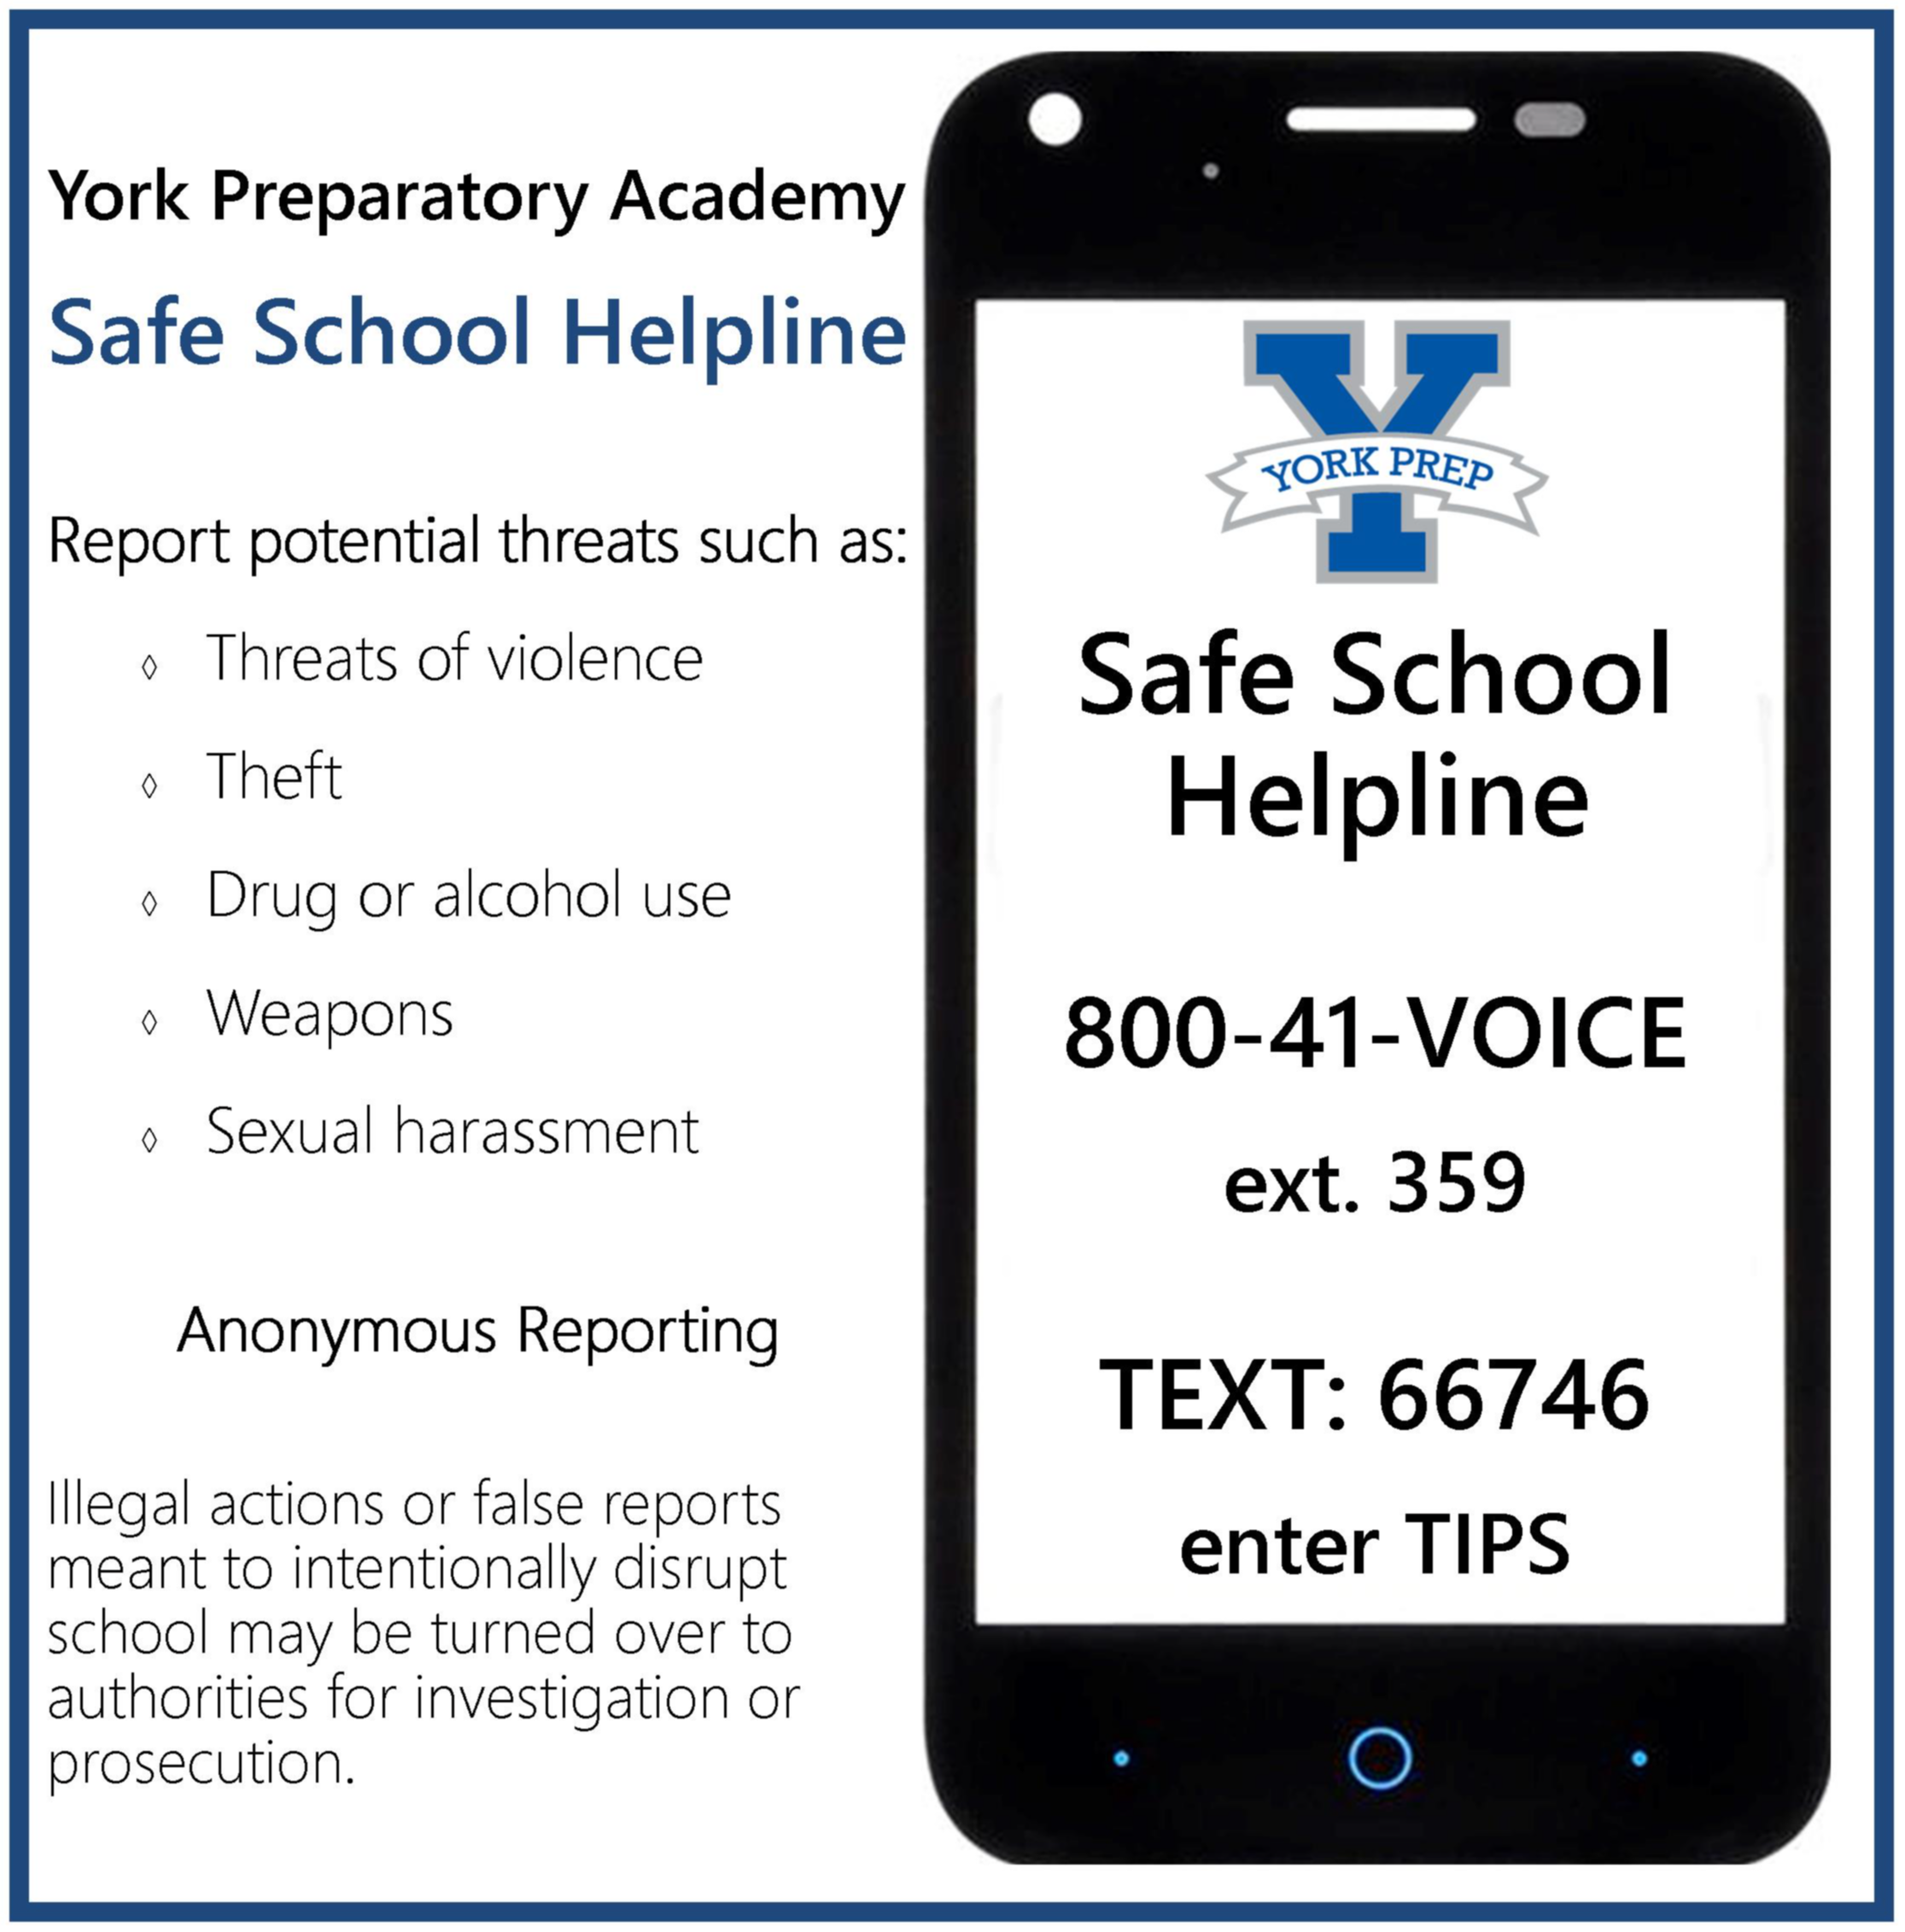 Safe School Helpline image